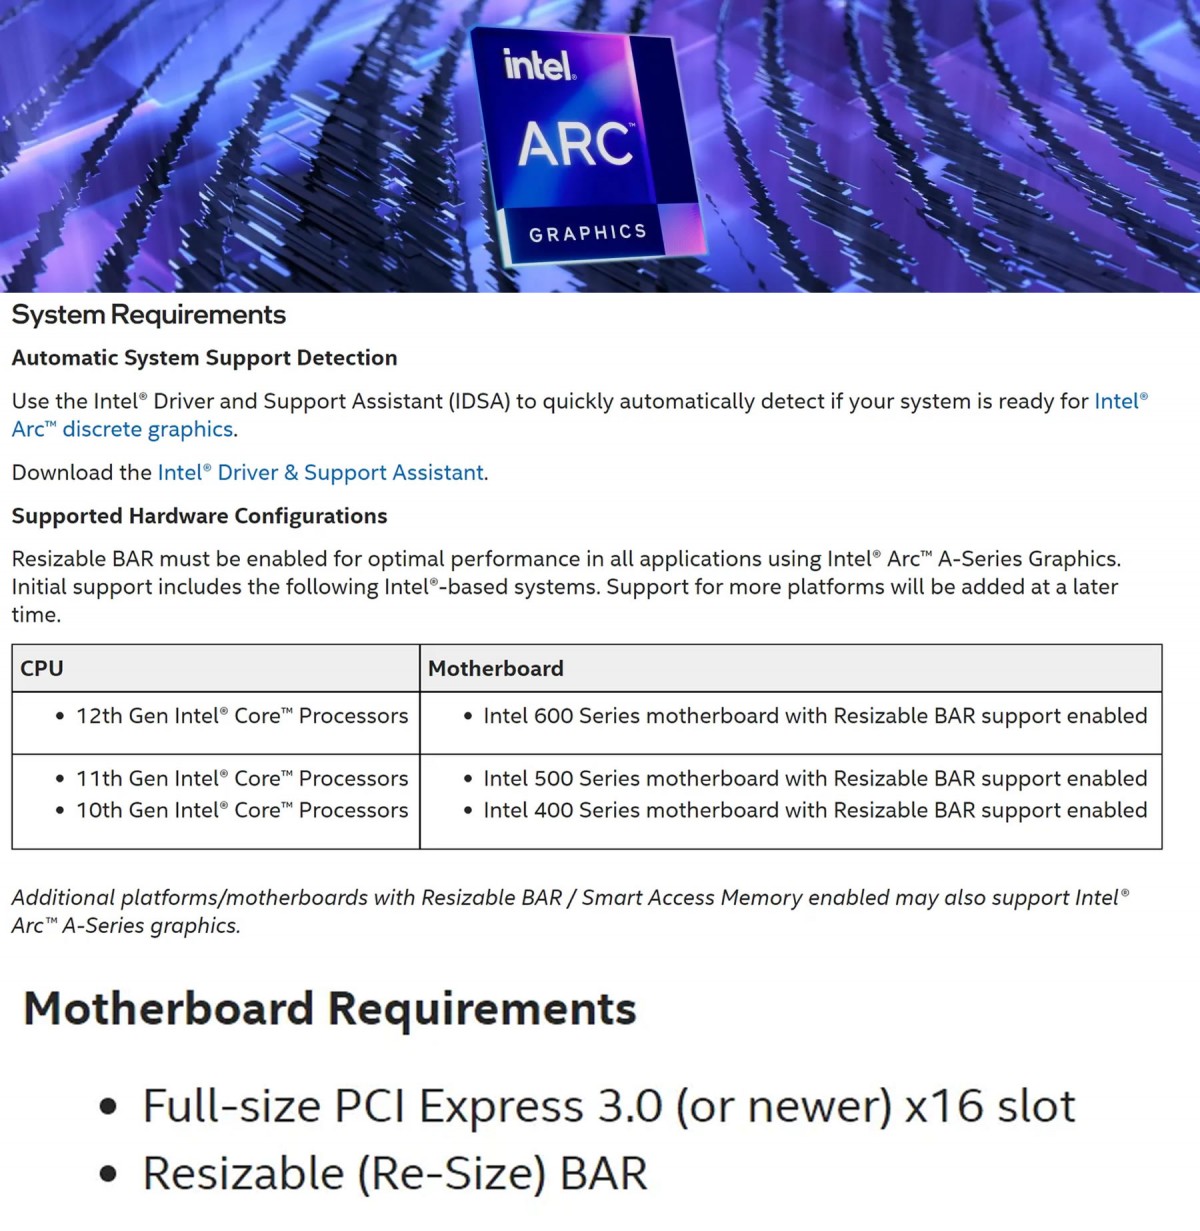 Le Resizable BAR sera nécessaire pour les cartes graphiques Intel Arc